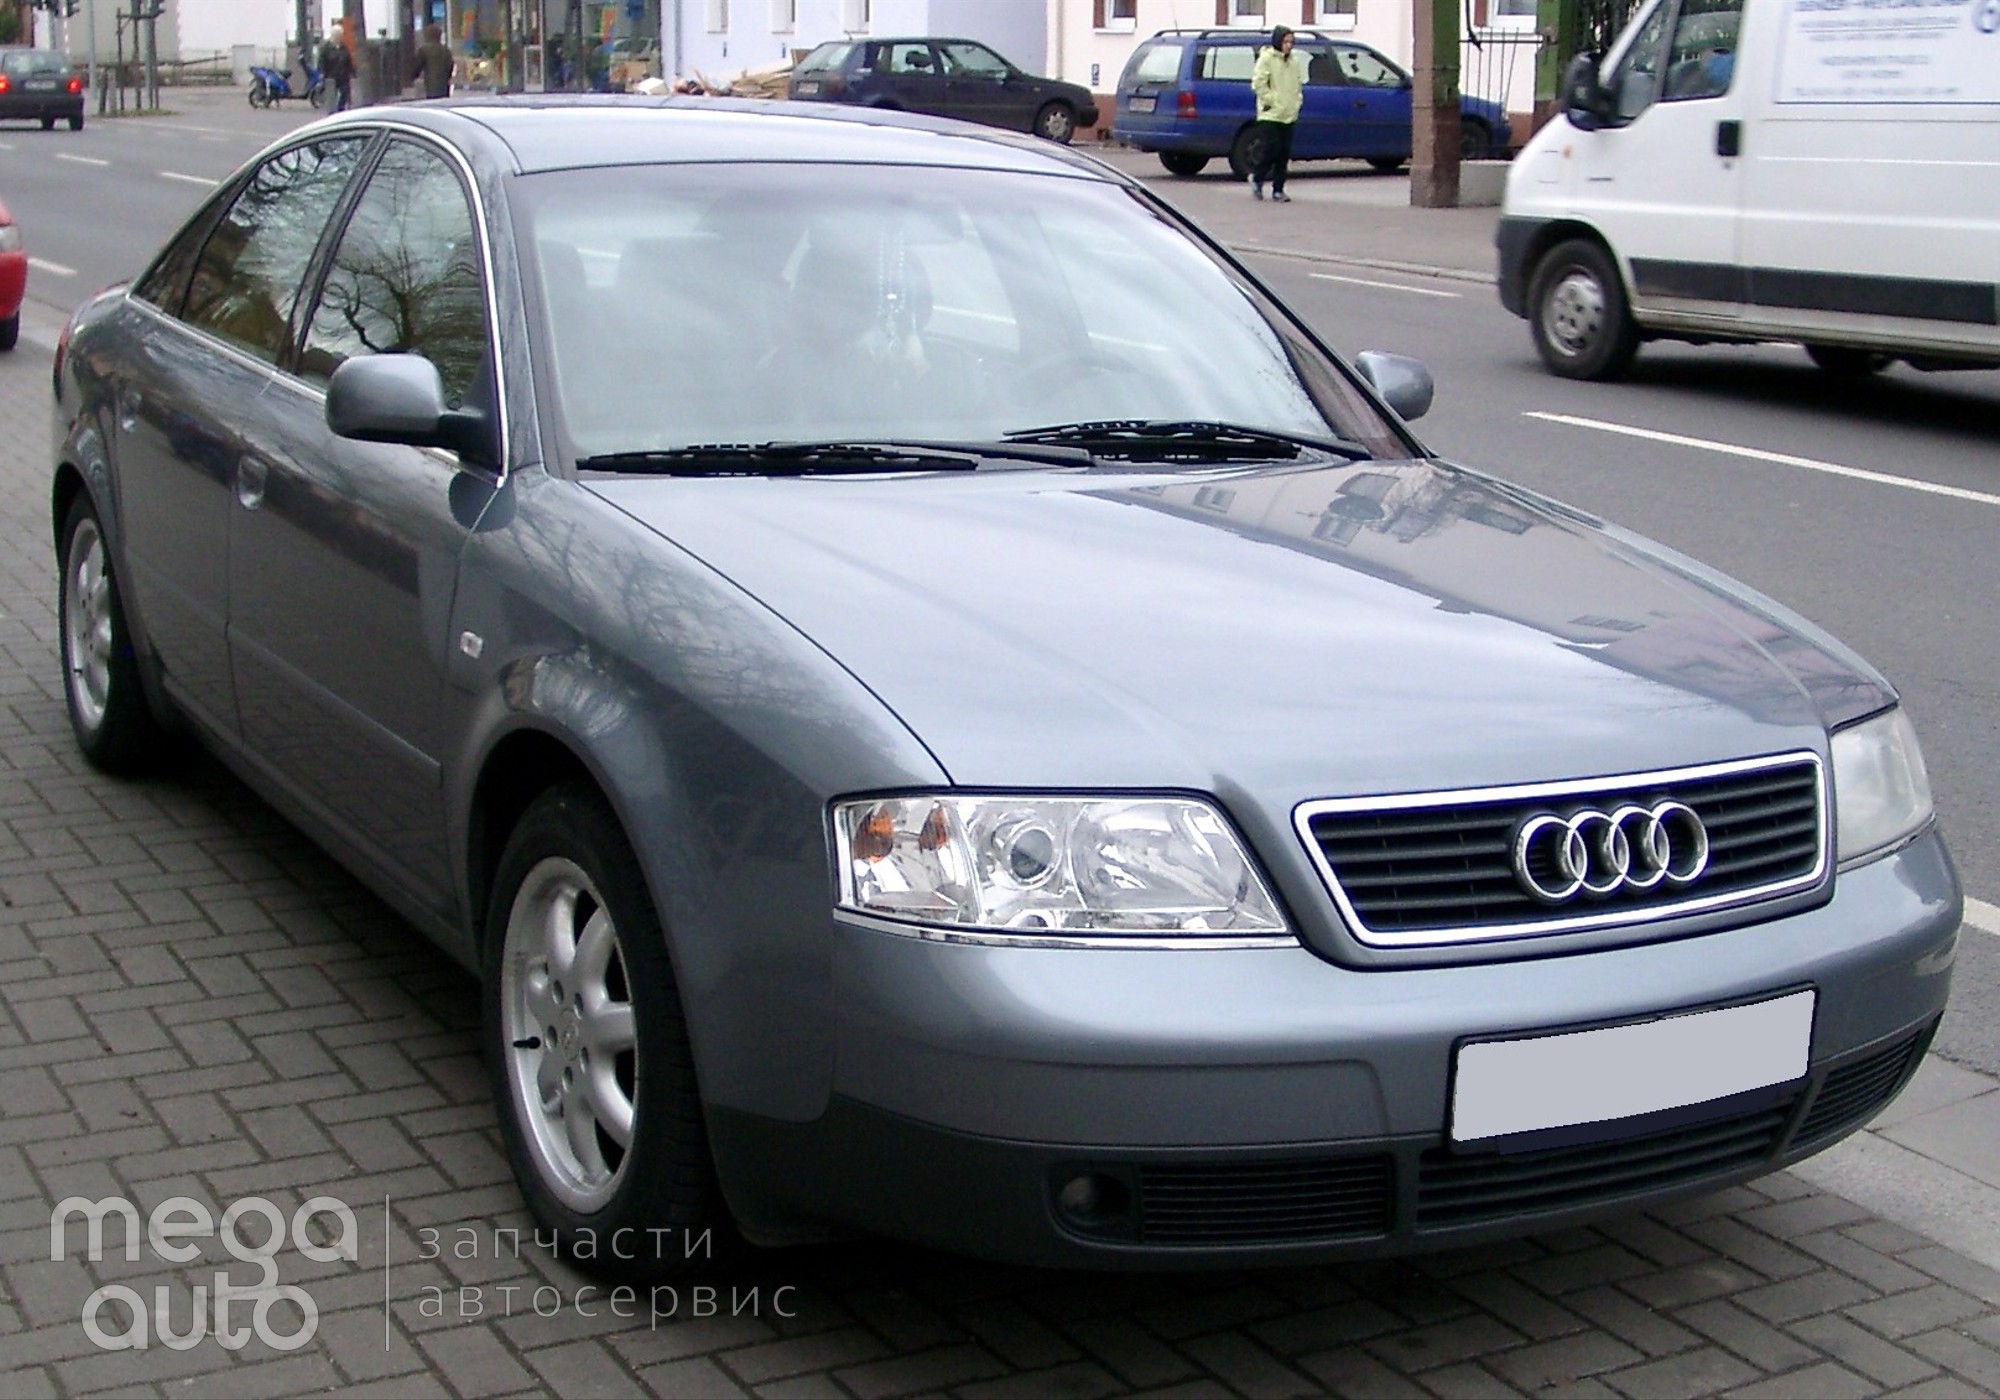 Audi A6 C5 1998 г. в разборе